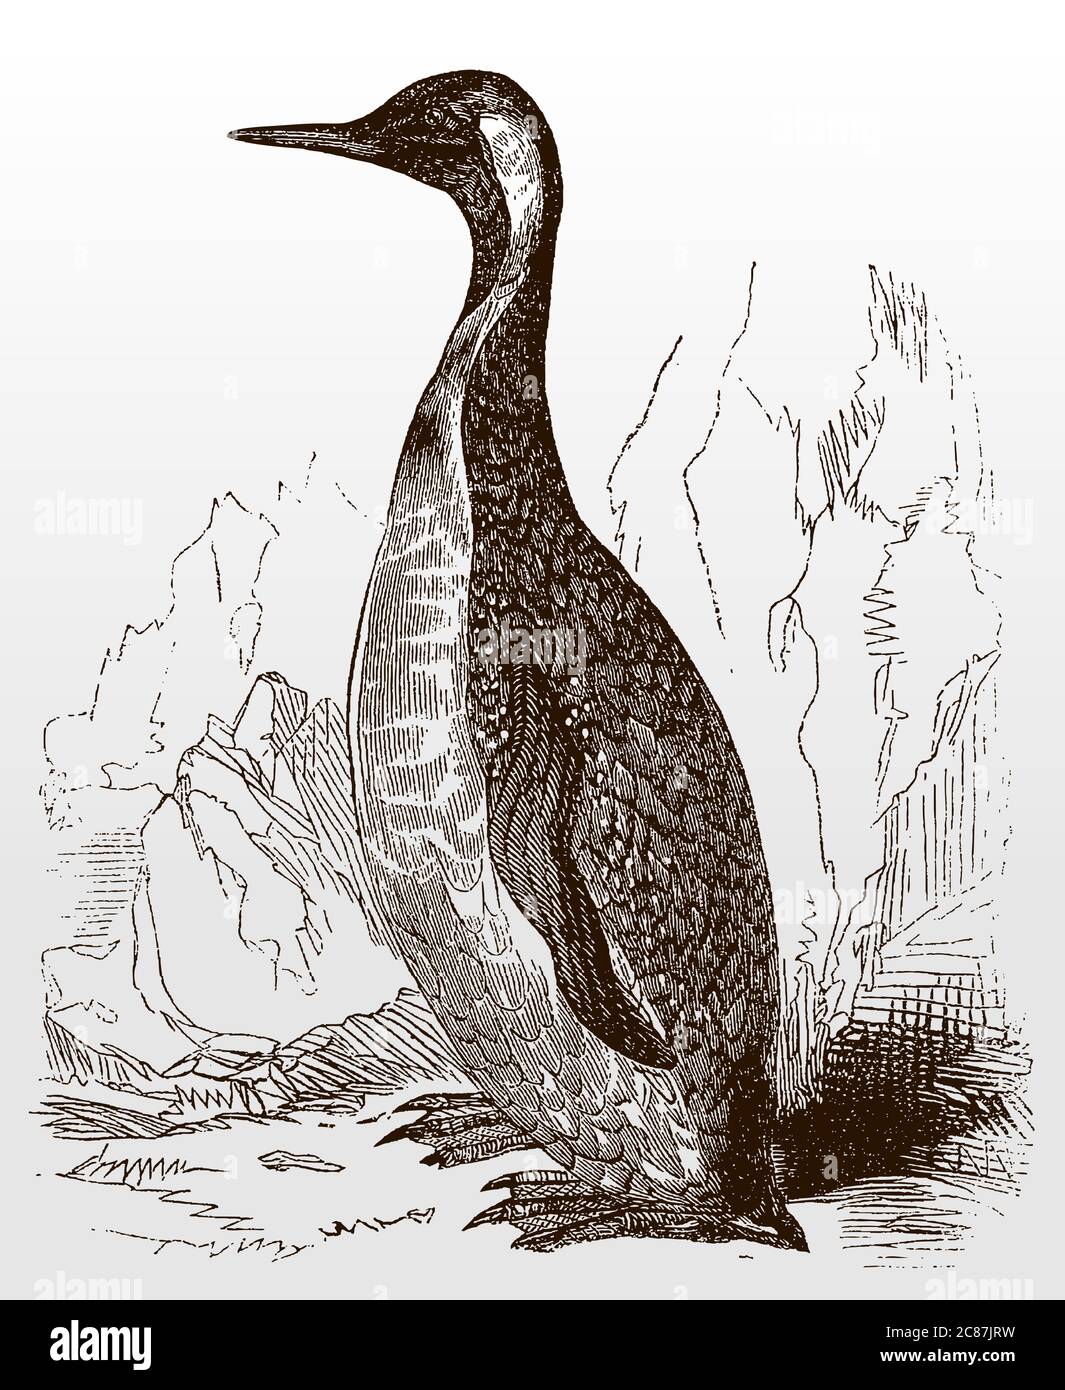 Grand pingouin, aptenodytes patagonicus en vue latérale assis dans un paysage rocheux et s'étendant de son cou, après une illustration antique de 19c Illustration de Vecteur